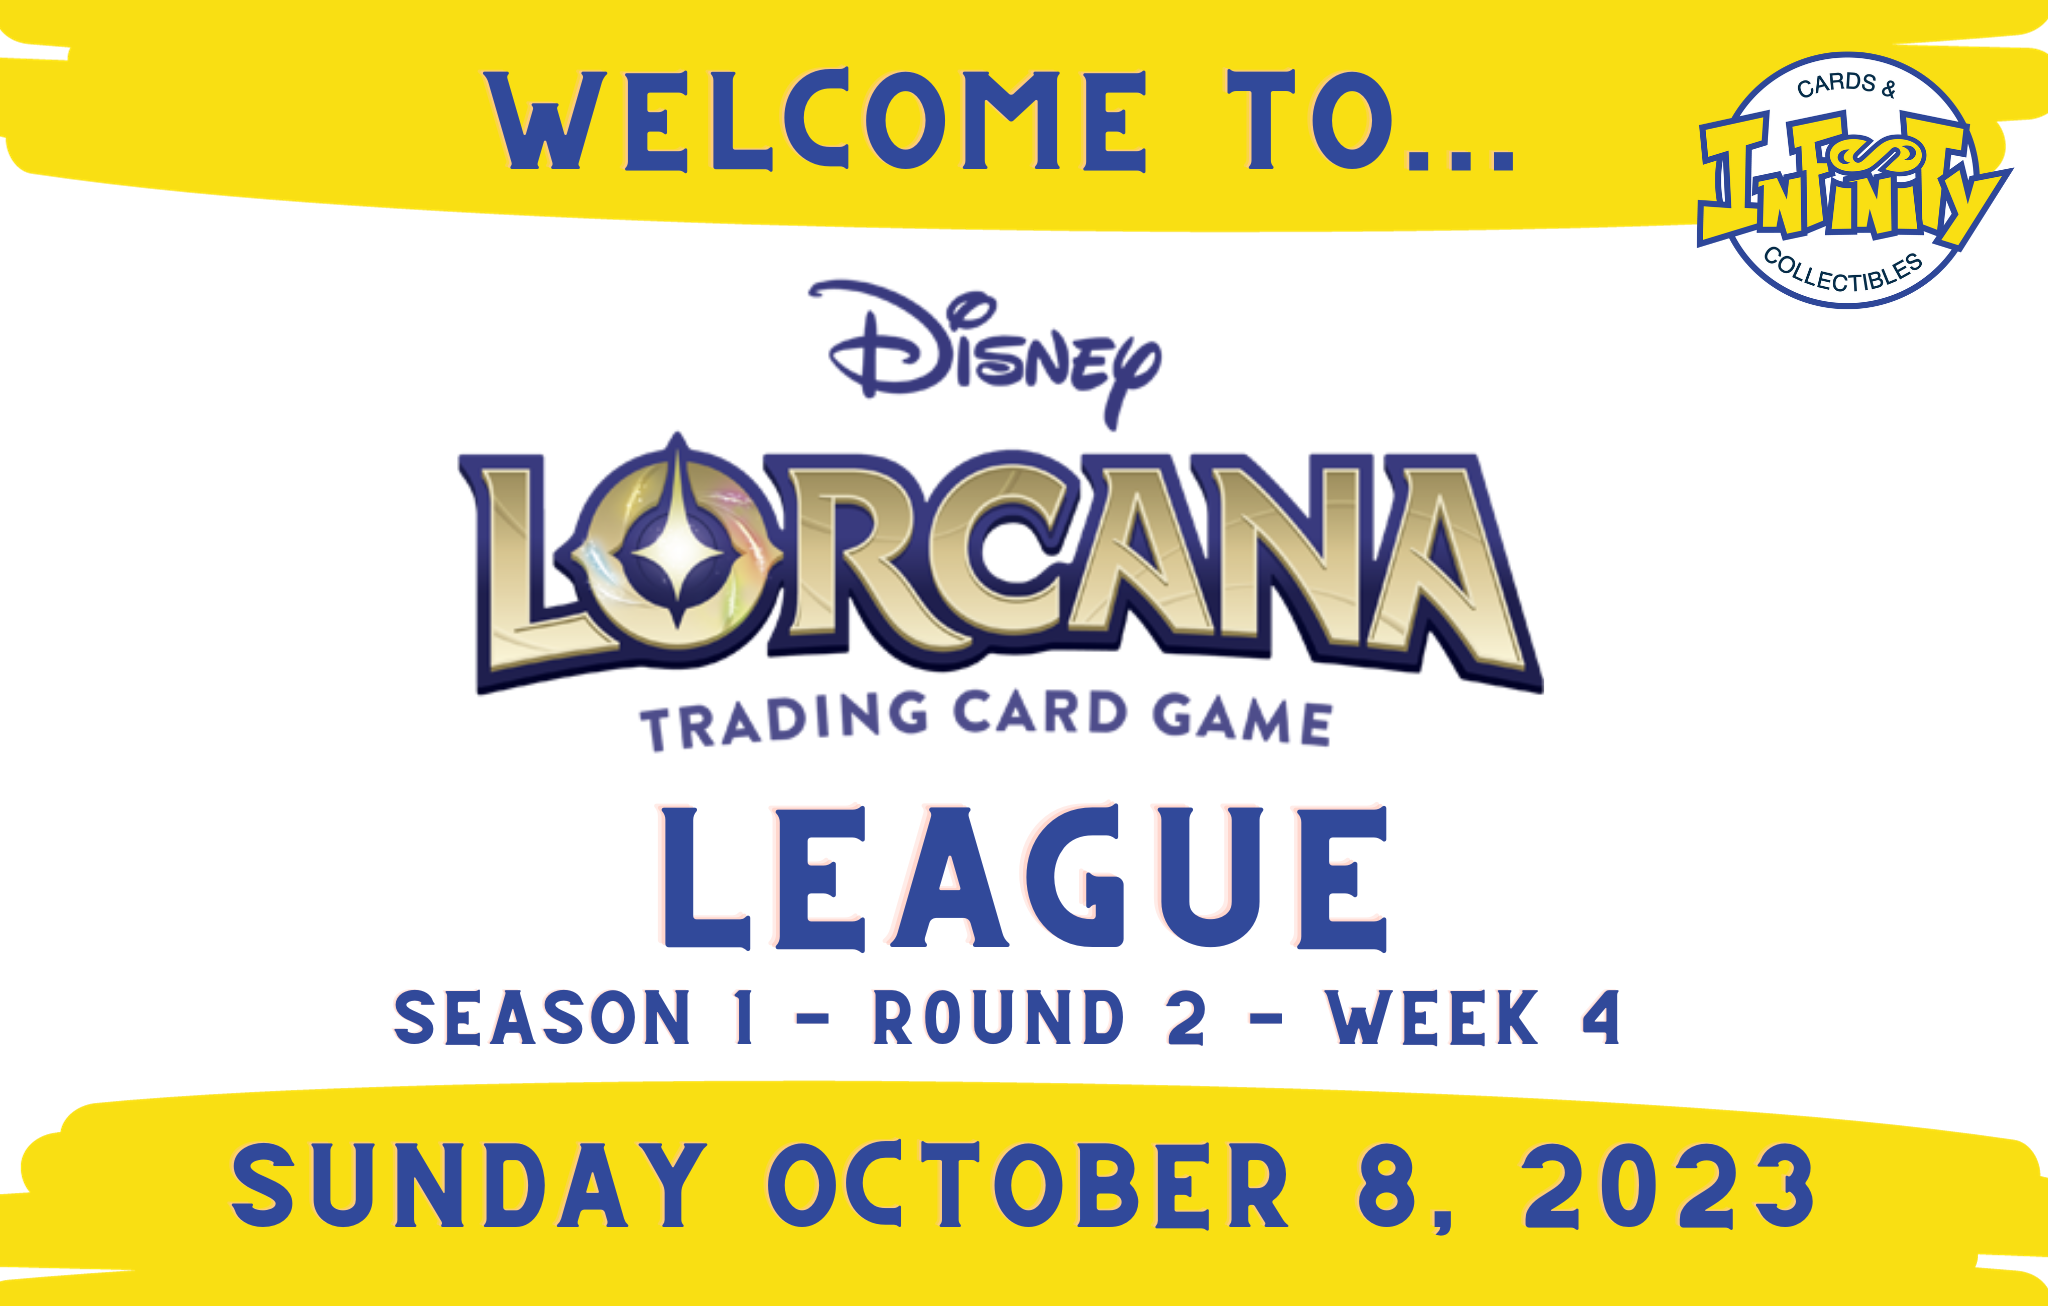 Lorcana League - Season 1 - Round 2 - Week 4 ticket - Sun, Oct 08 2023